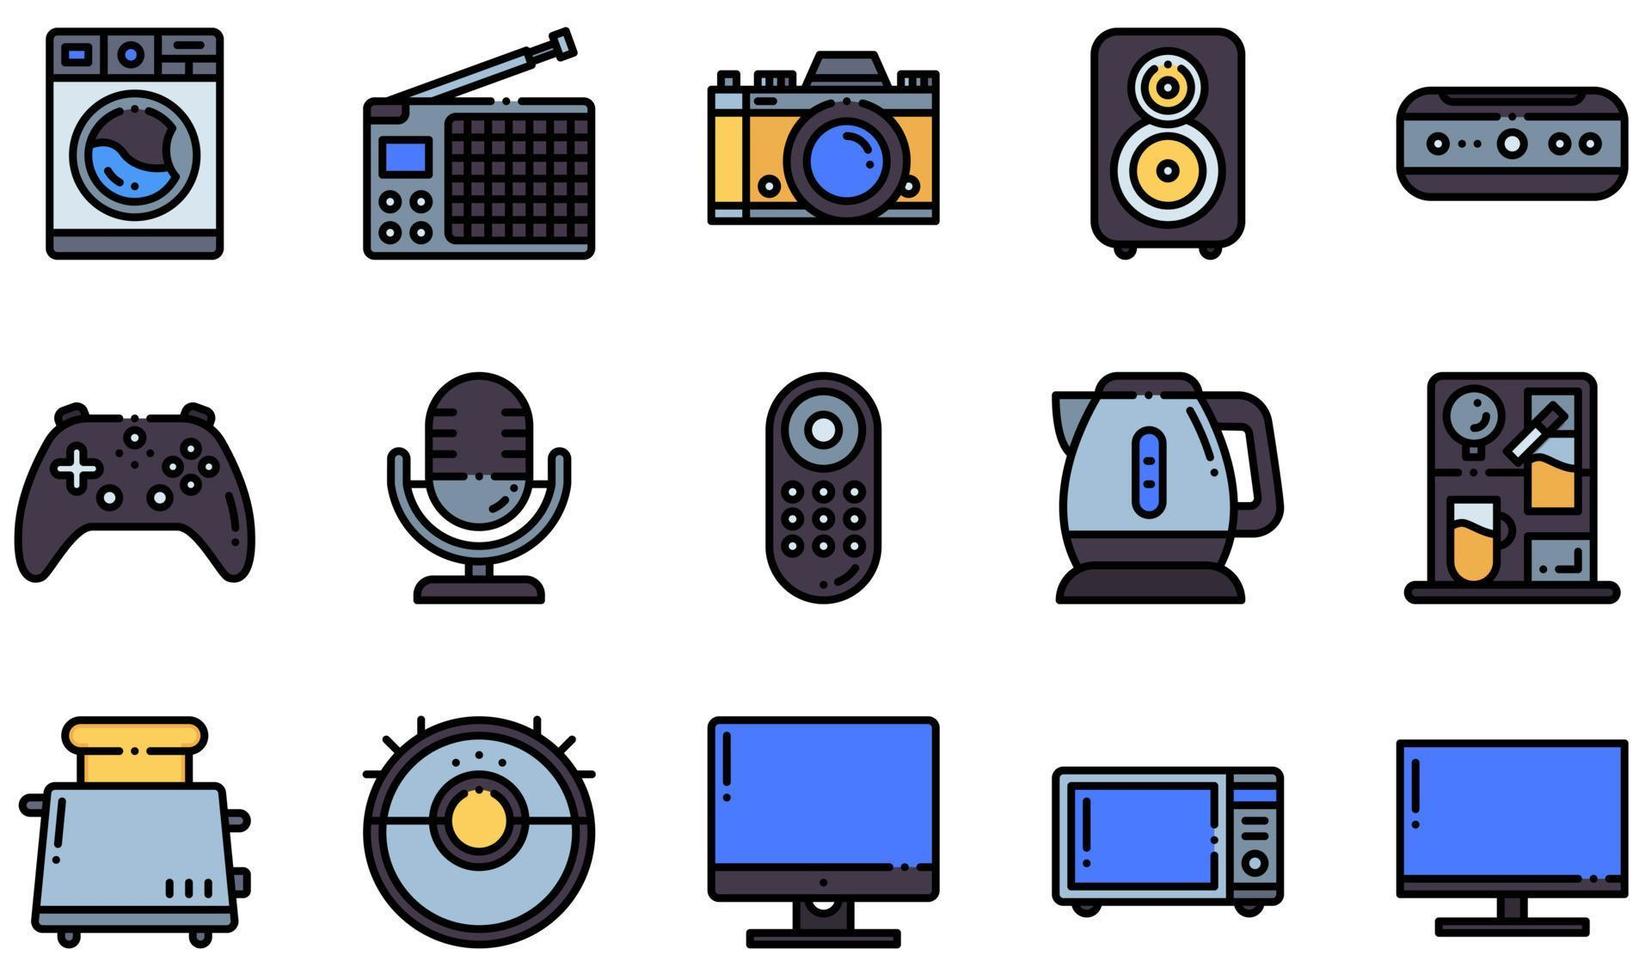 conjunto de iconos vectoriales relacionados con dispositivos electrónicos. contiene íconos como impresora, proyector, radio, teléfono inteligente, tostadora, lavadora y más. vector